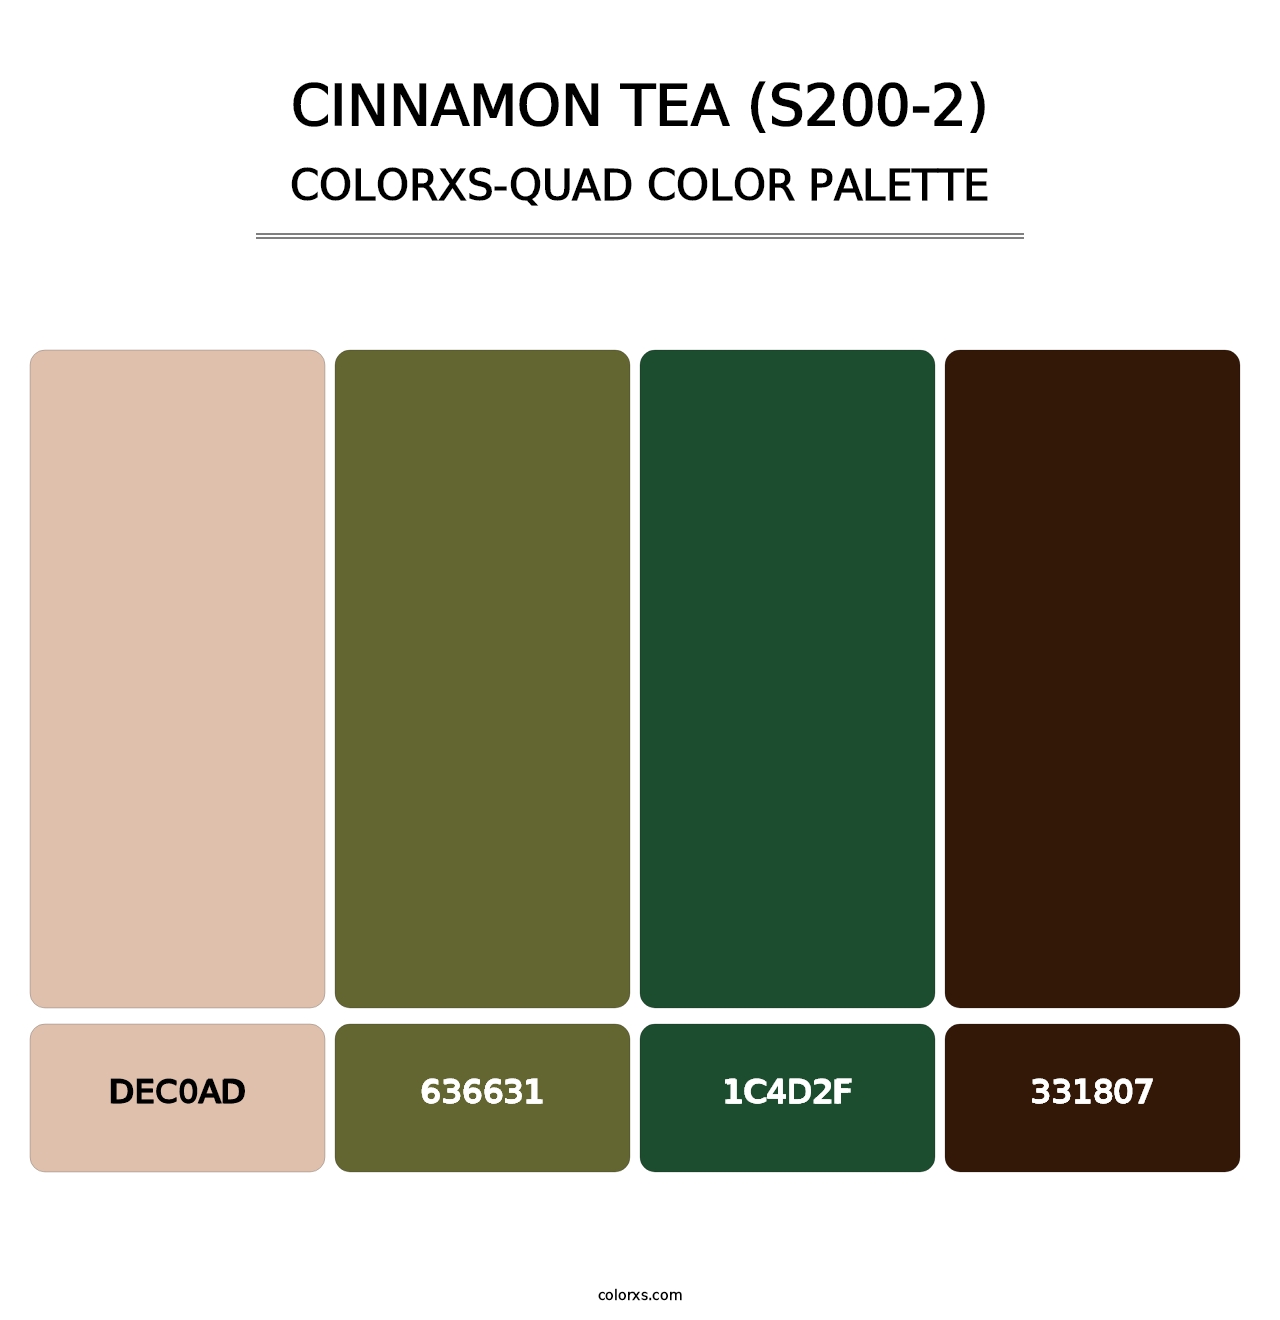 Cinnamon Tea (S200-2) - Colorxs Quad Palette